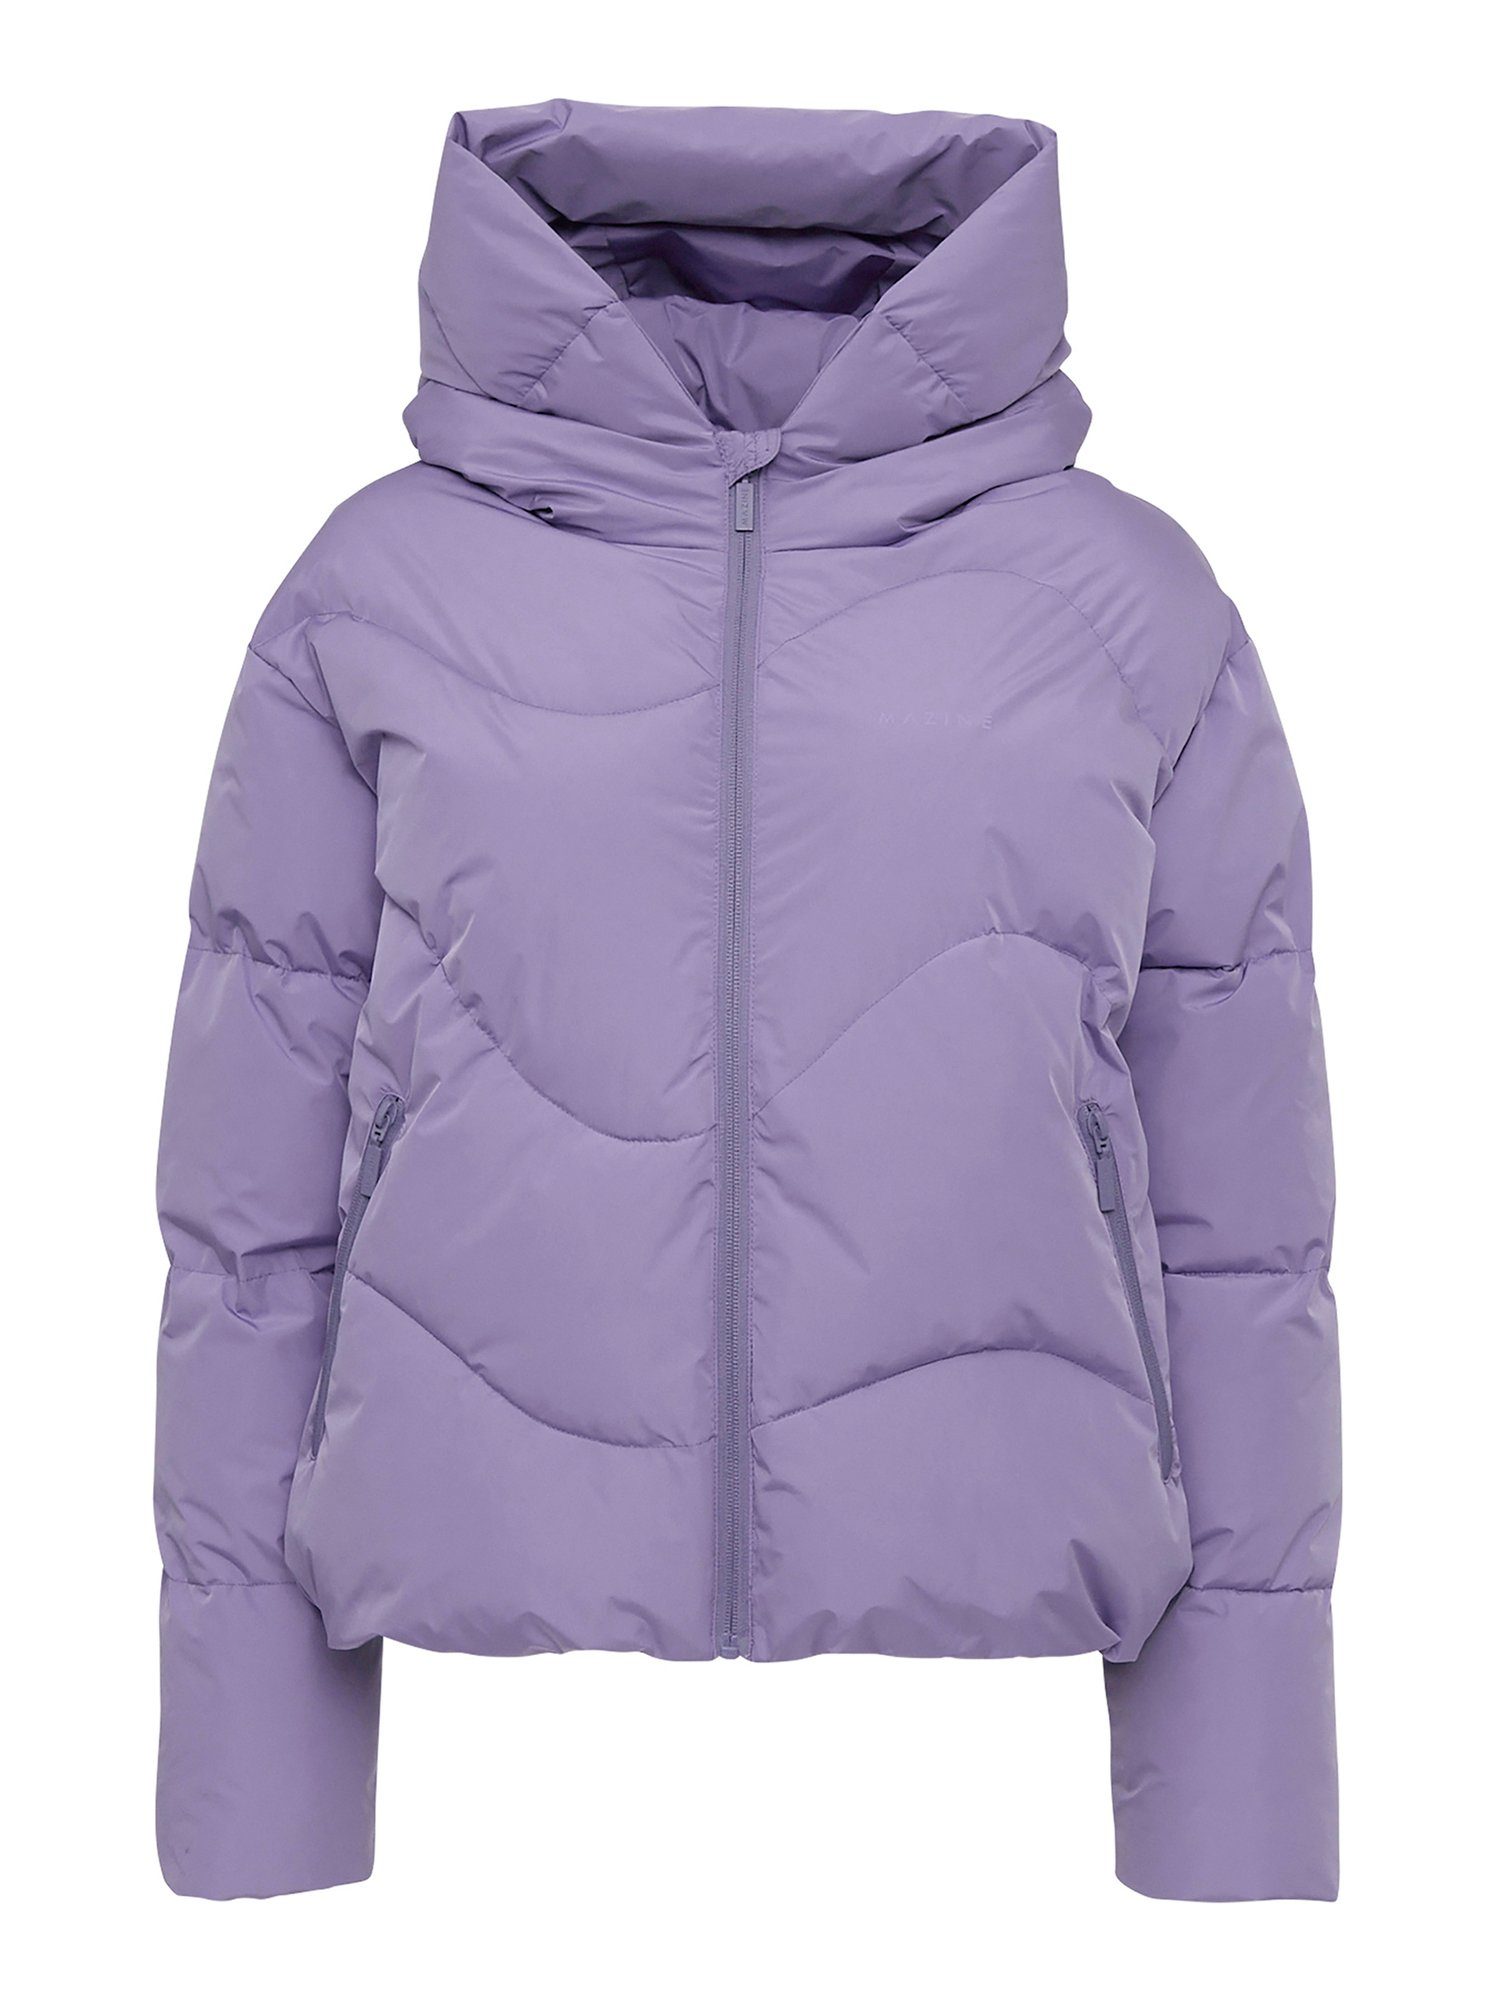 Puffer MAZINE Jacket purple haze warm Dana gefüttert Winterjacke